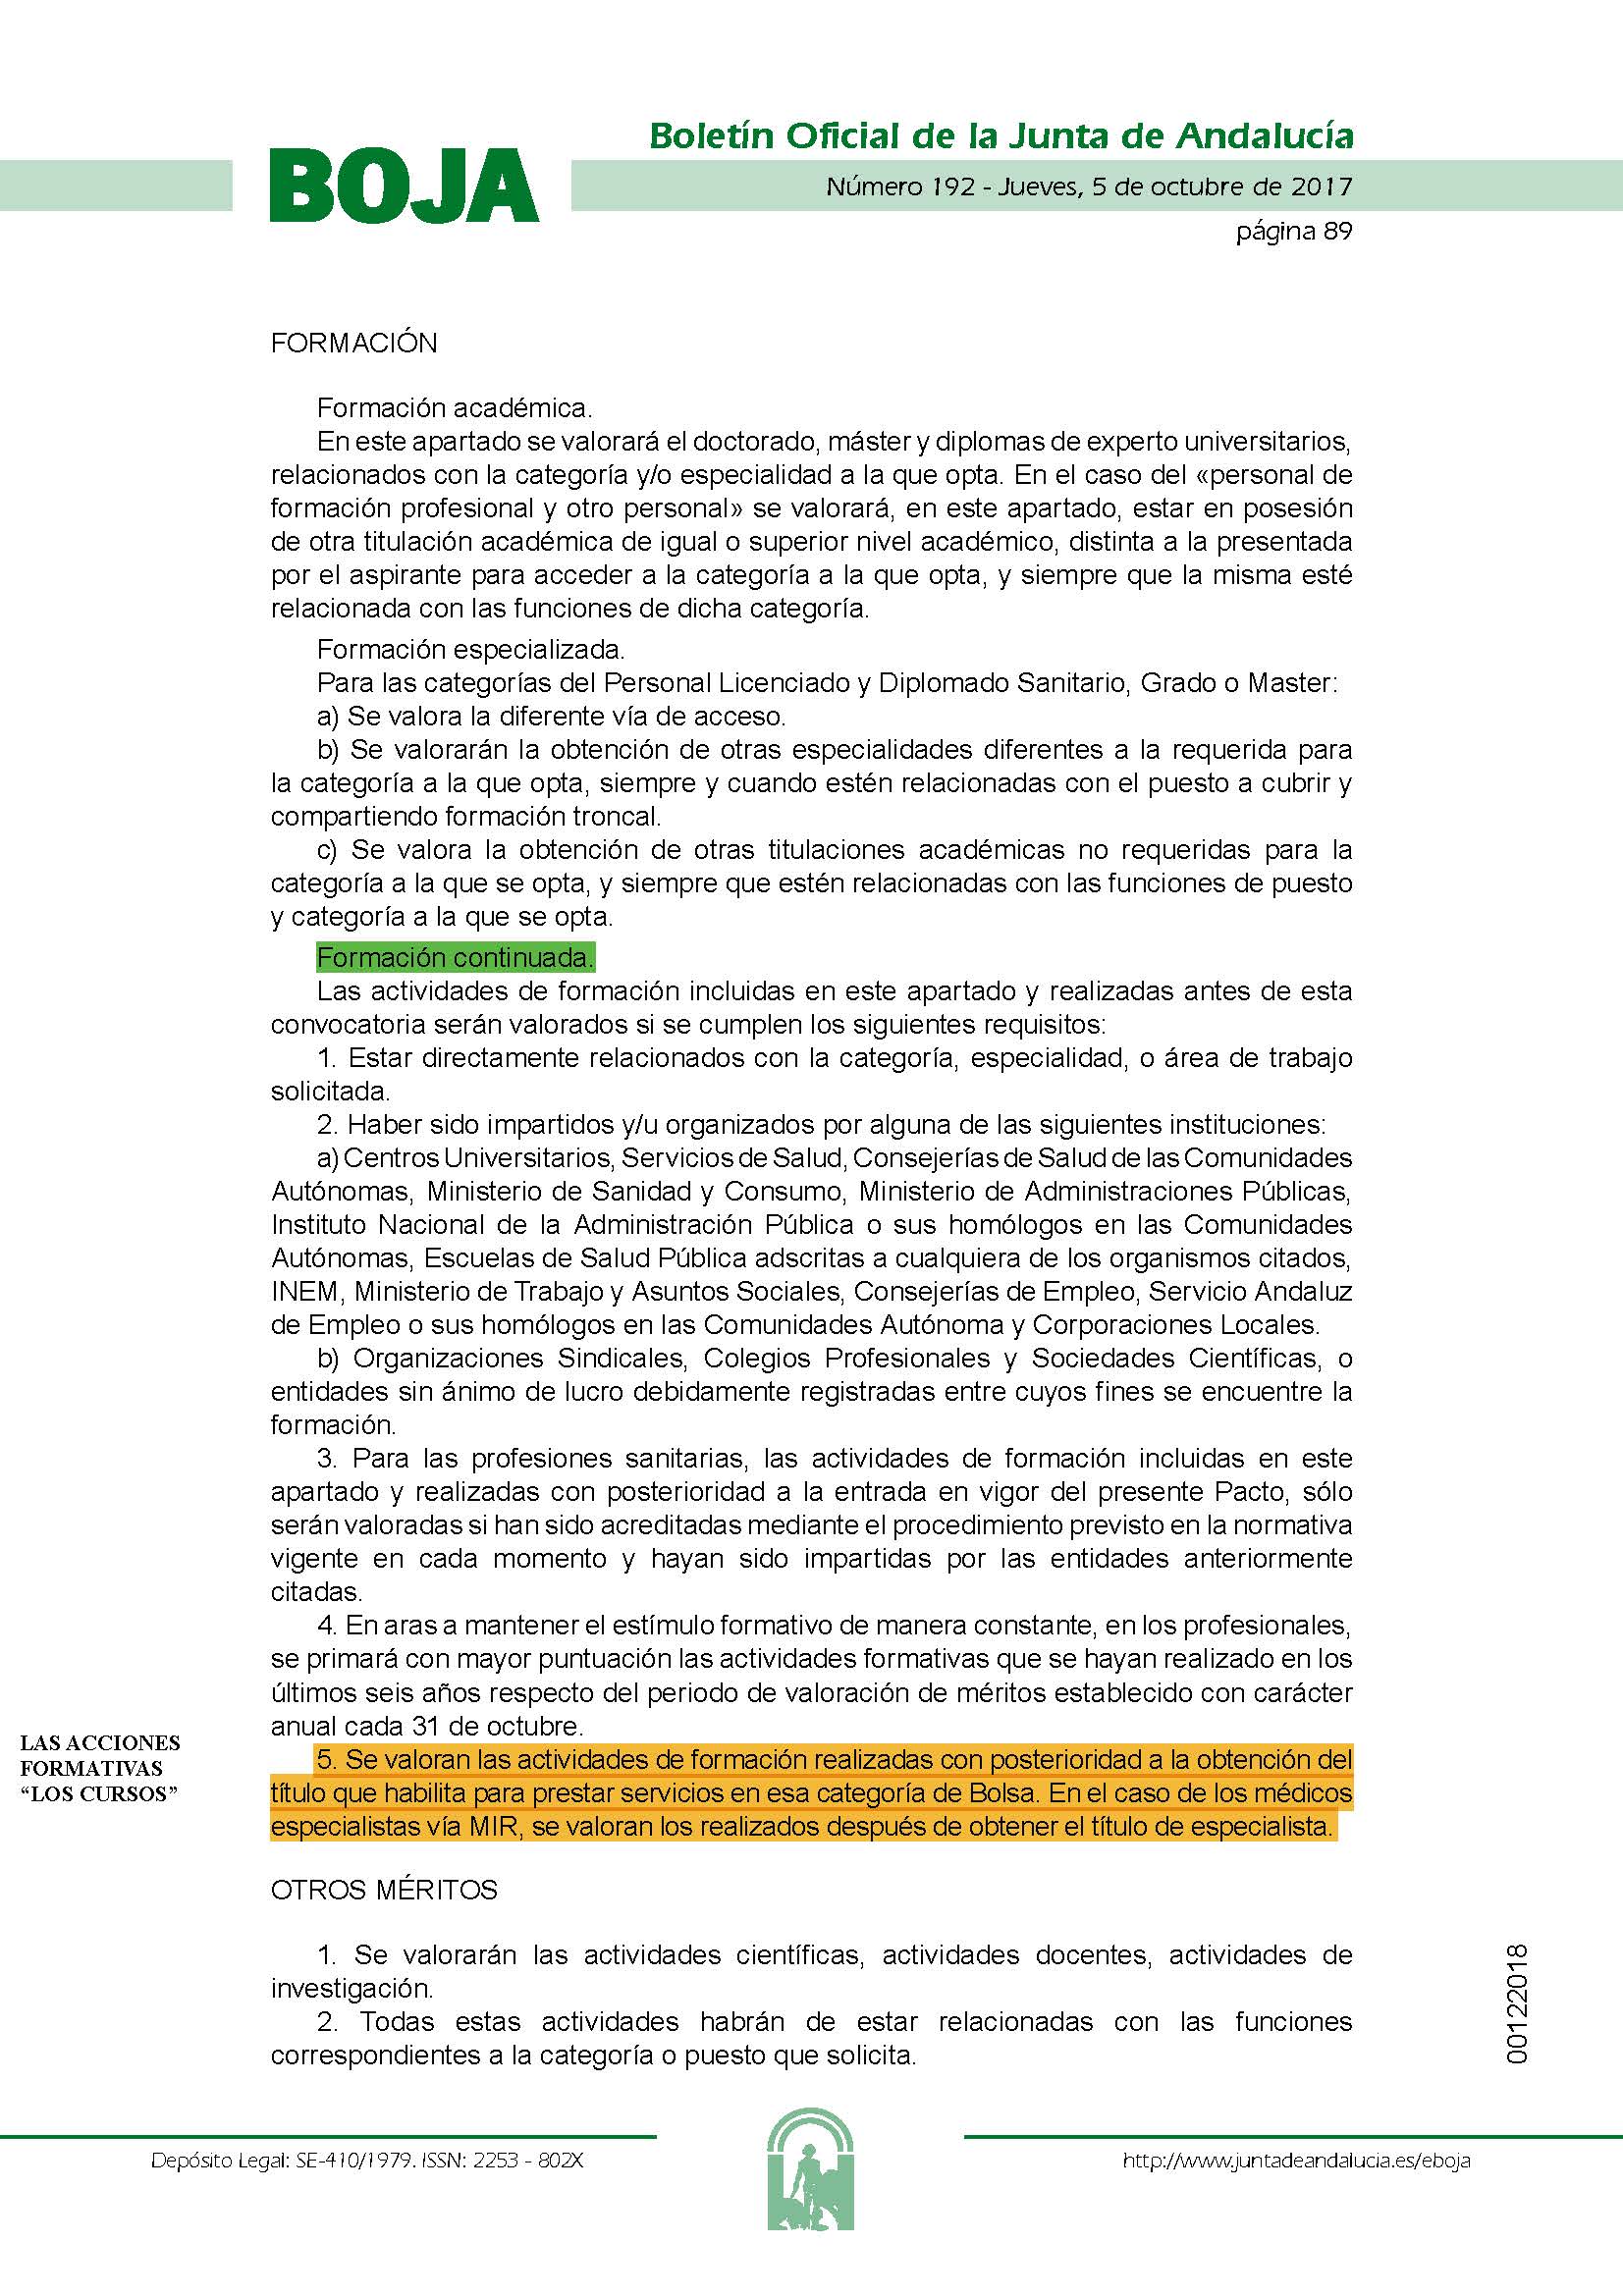 Aclaraciones sobre cursos, másteres formación durante el periodo MIR para la Bolsa de Empleo. | Sindicato Médico Andaluz